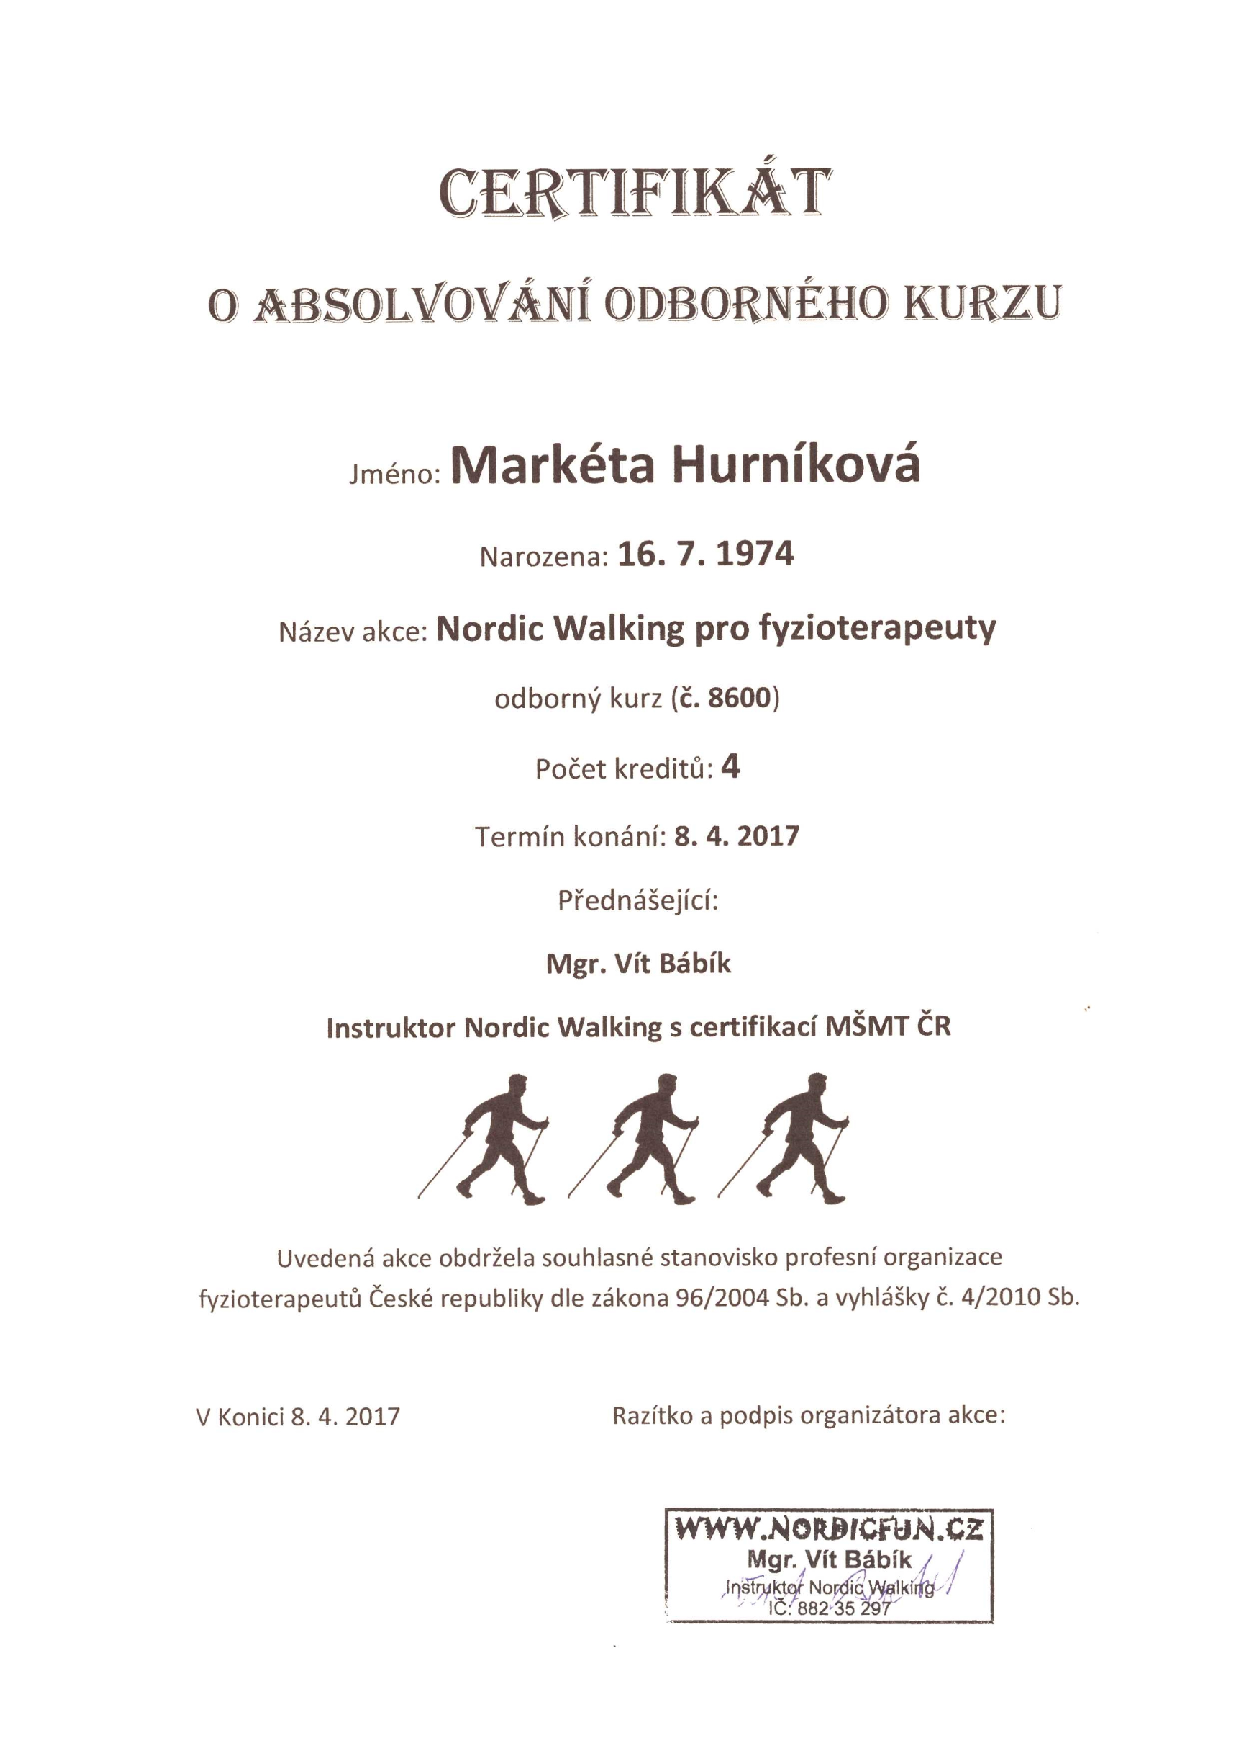 Nordic Walking pro fyzioterapeuty